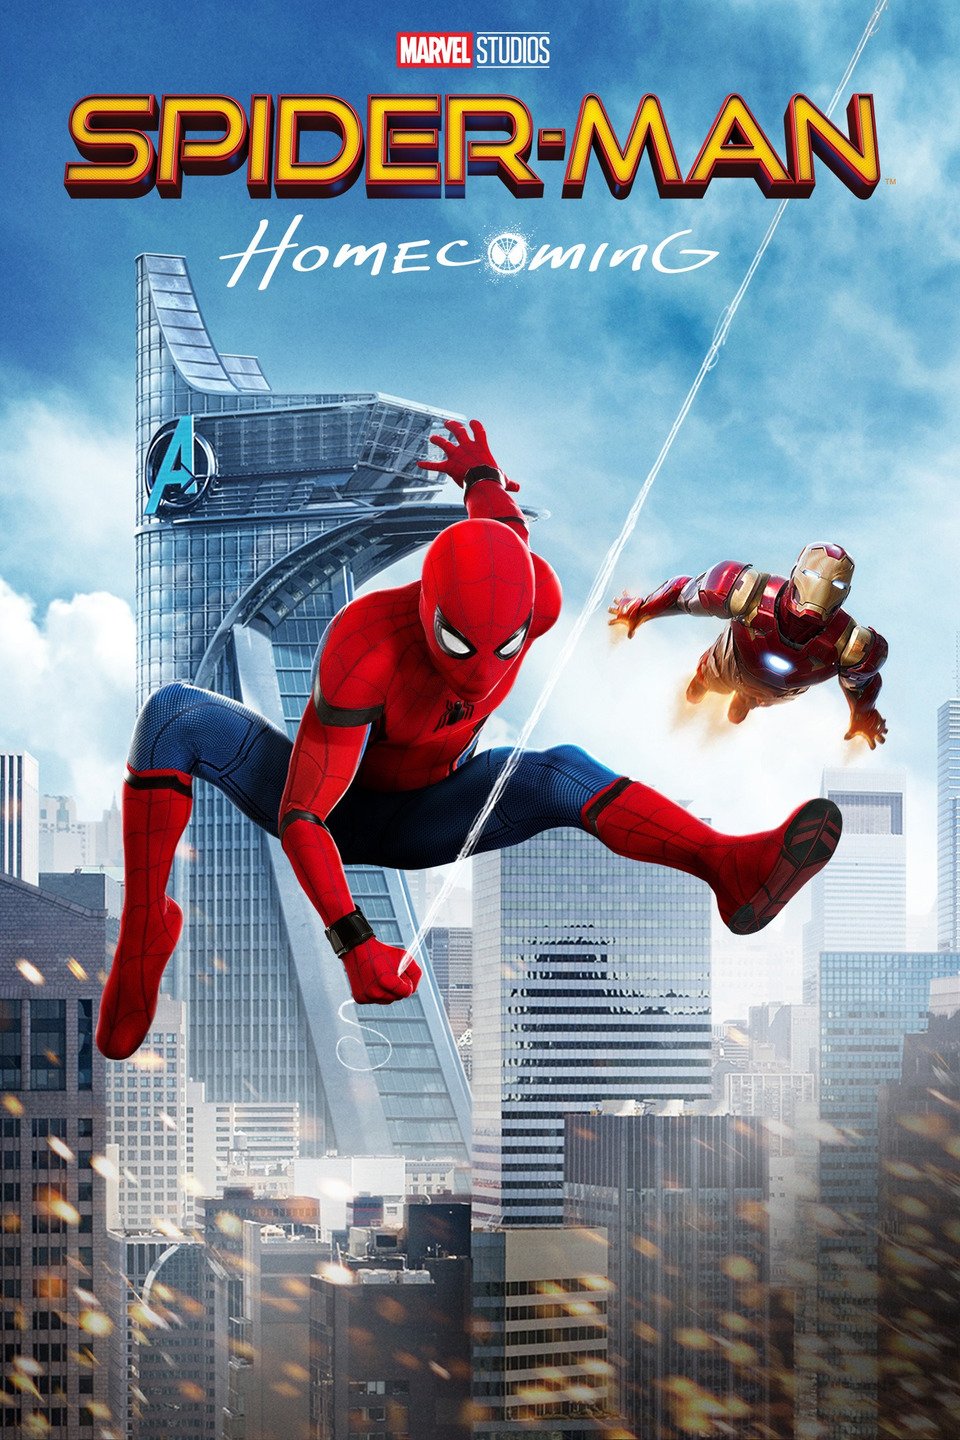 [MINI Super-HQ] Spider-Man: Homecoming (2017) สไปเดอร์แมน: โฮมคัมมิ่ง [Master] [1080p] [พากย์ไทย 5.1 แท้ + เสียงอังกฤษ DTS] [BrRip.DTS.x264.THB] [บรรยายไทย + อังกฤษ] [เสียงไทย + ซับไทย]